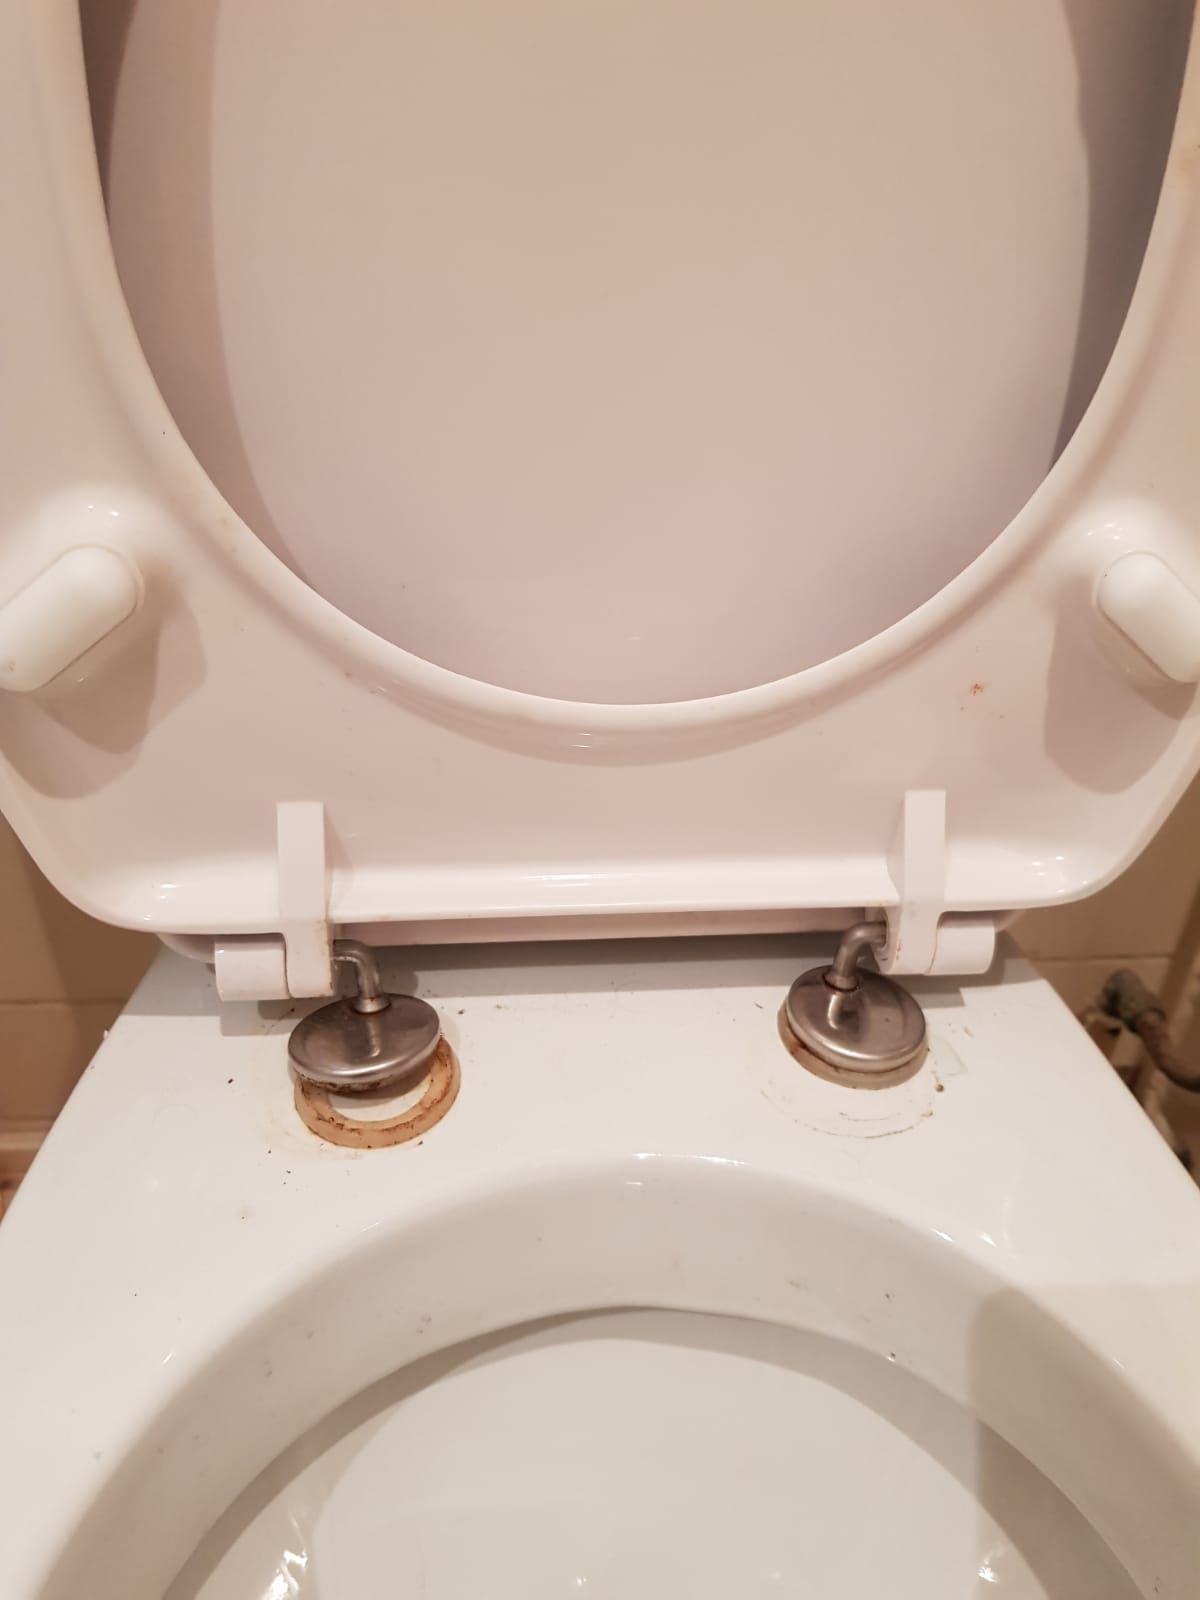 Verst intellectueel Spreek uit Toilet repareren: Toilet repareren: wc bril zit los - Werkspot